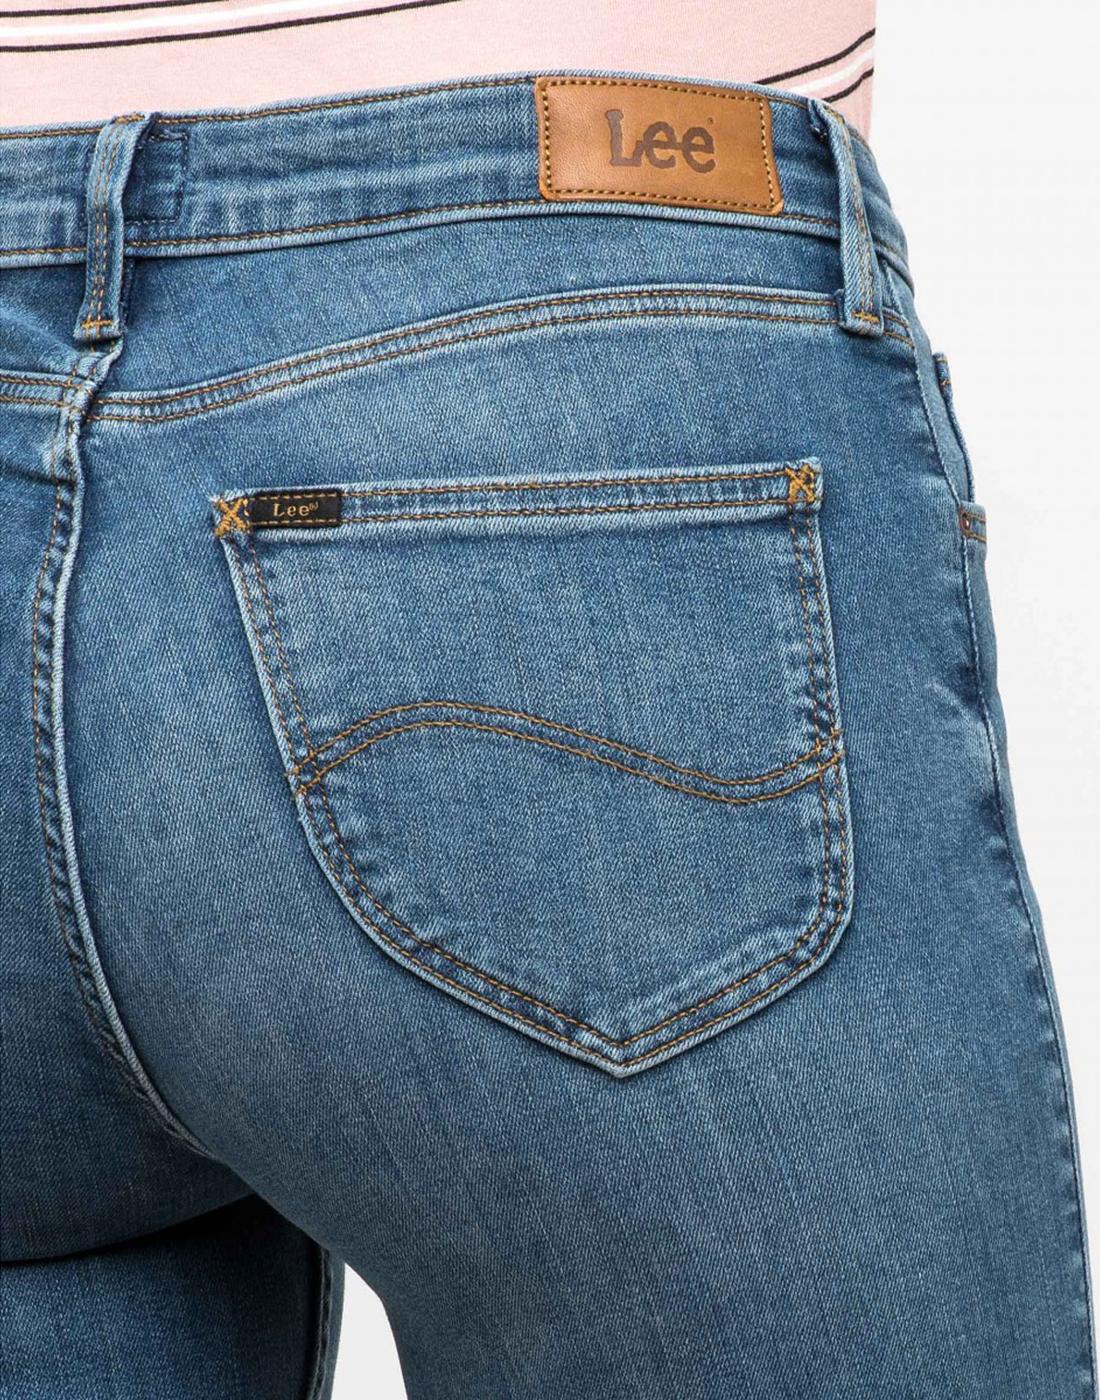 Einzelheiten mehr als 69 lee low rise bootcut jeans neueste ...